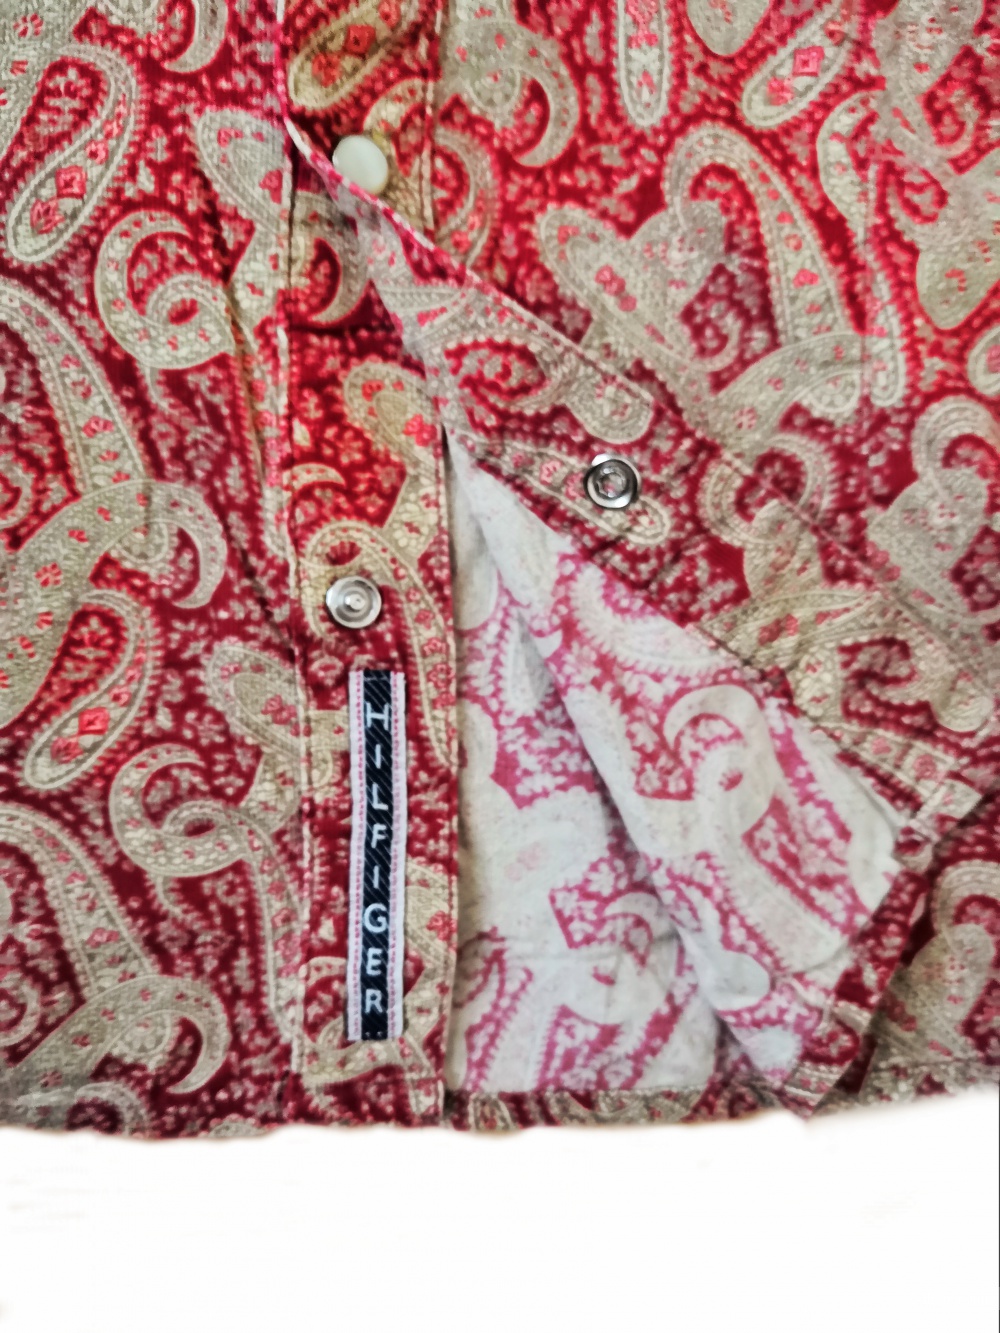 Вельветовая рубашка Tommy Hilfiger, XL